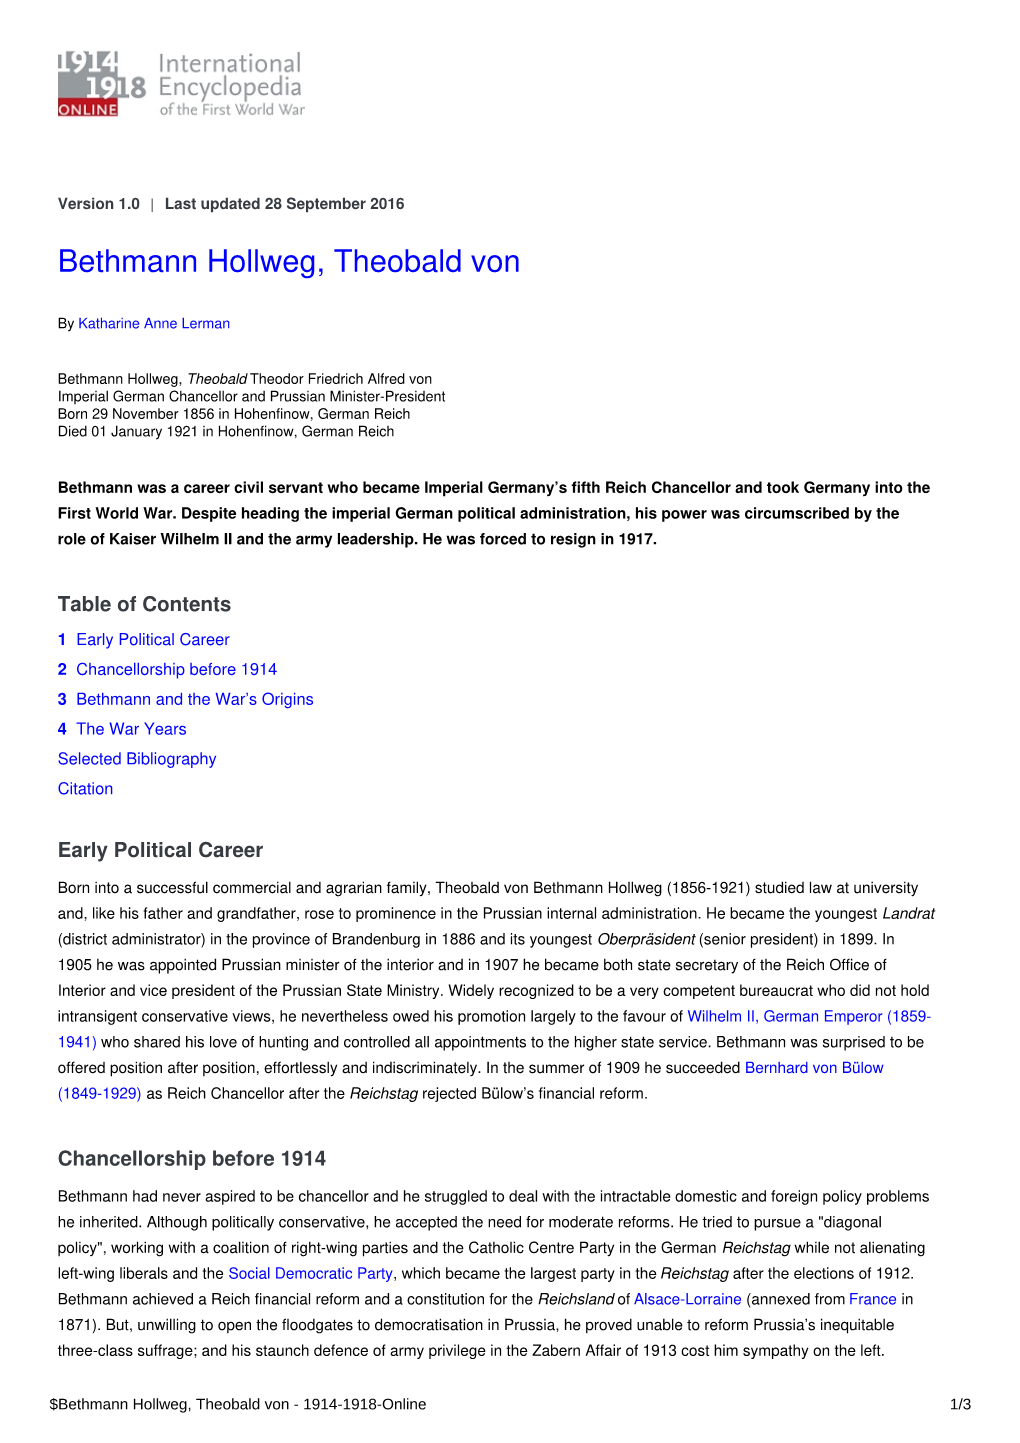 Bethmann Hollweg, Theobald Von